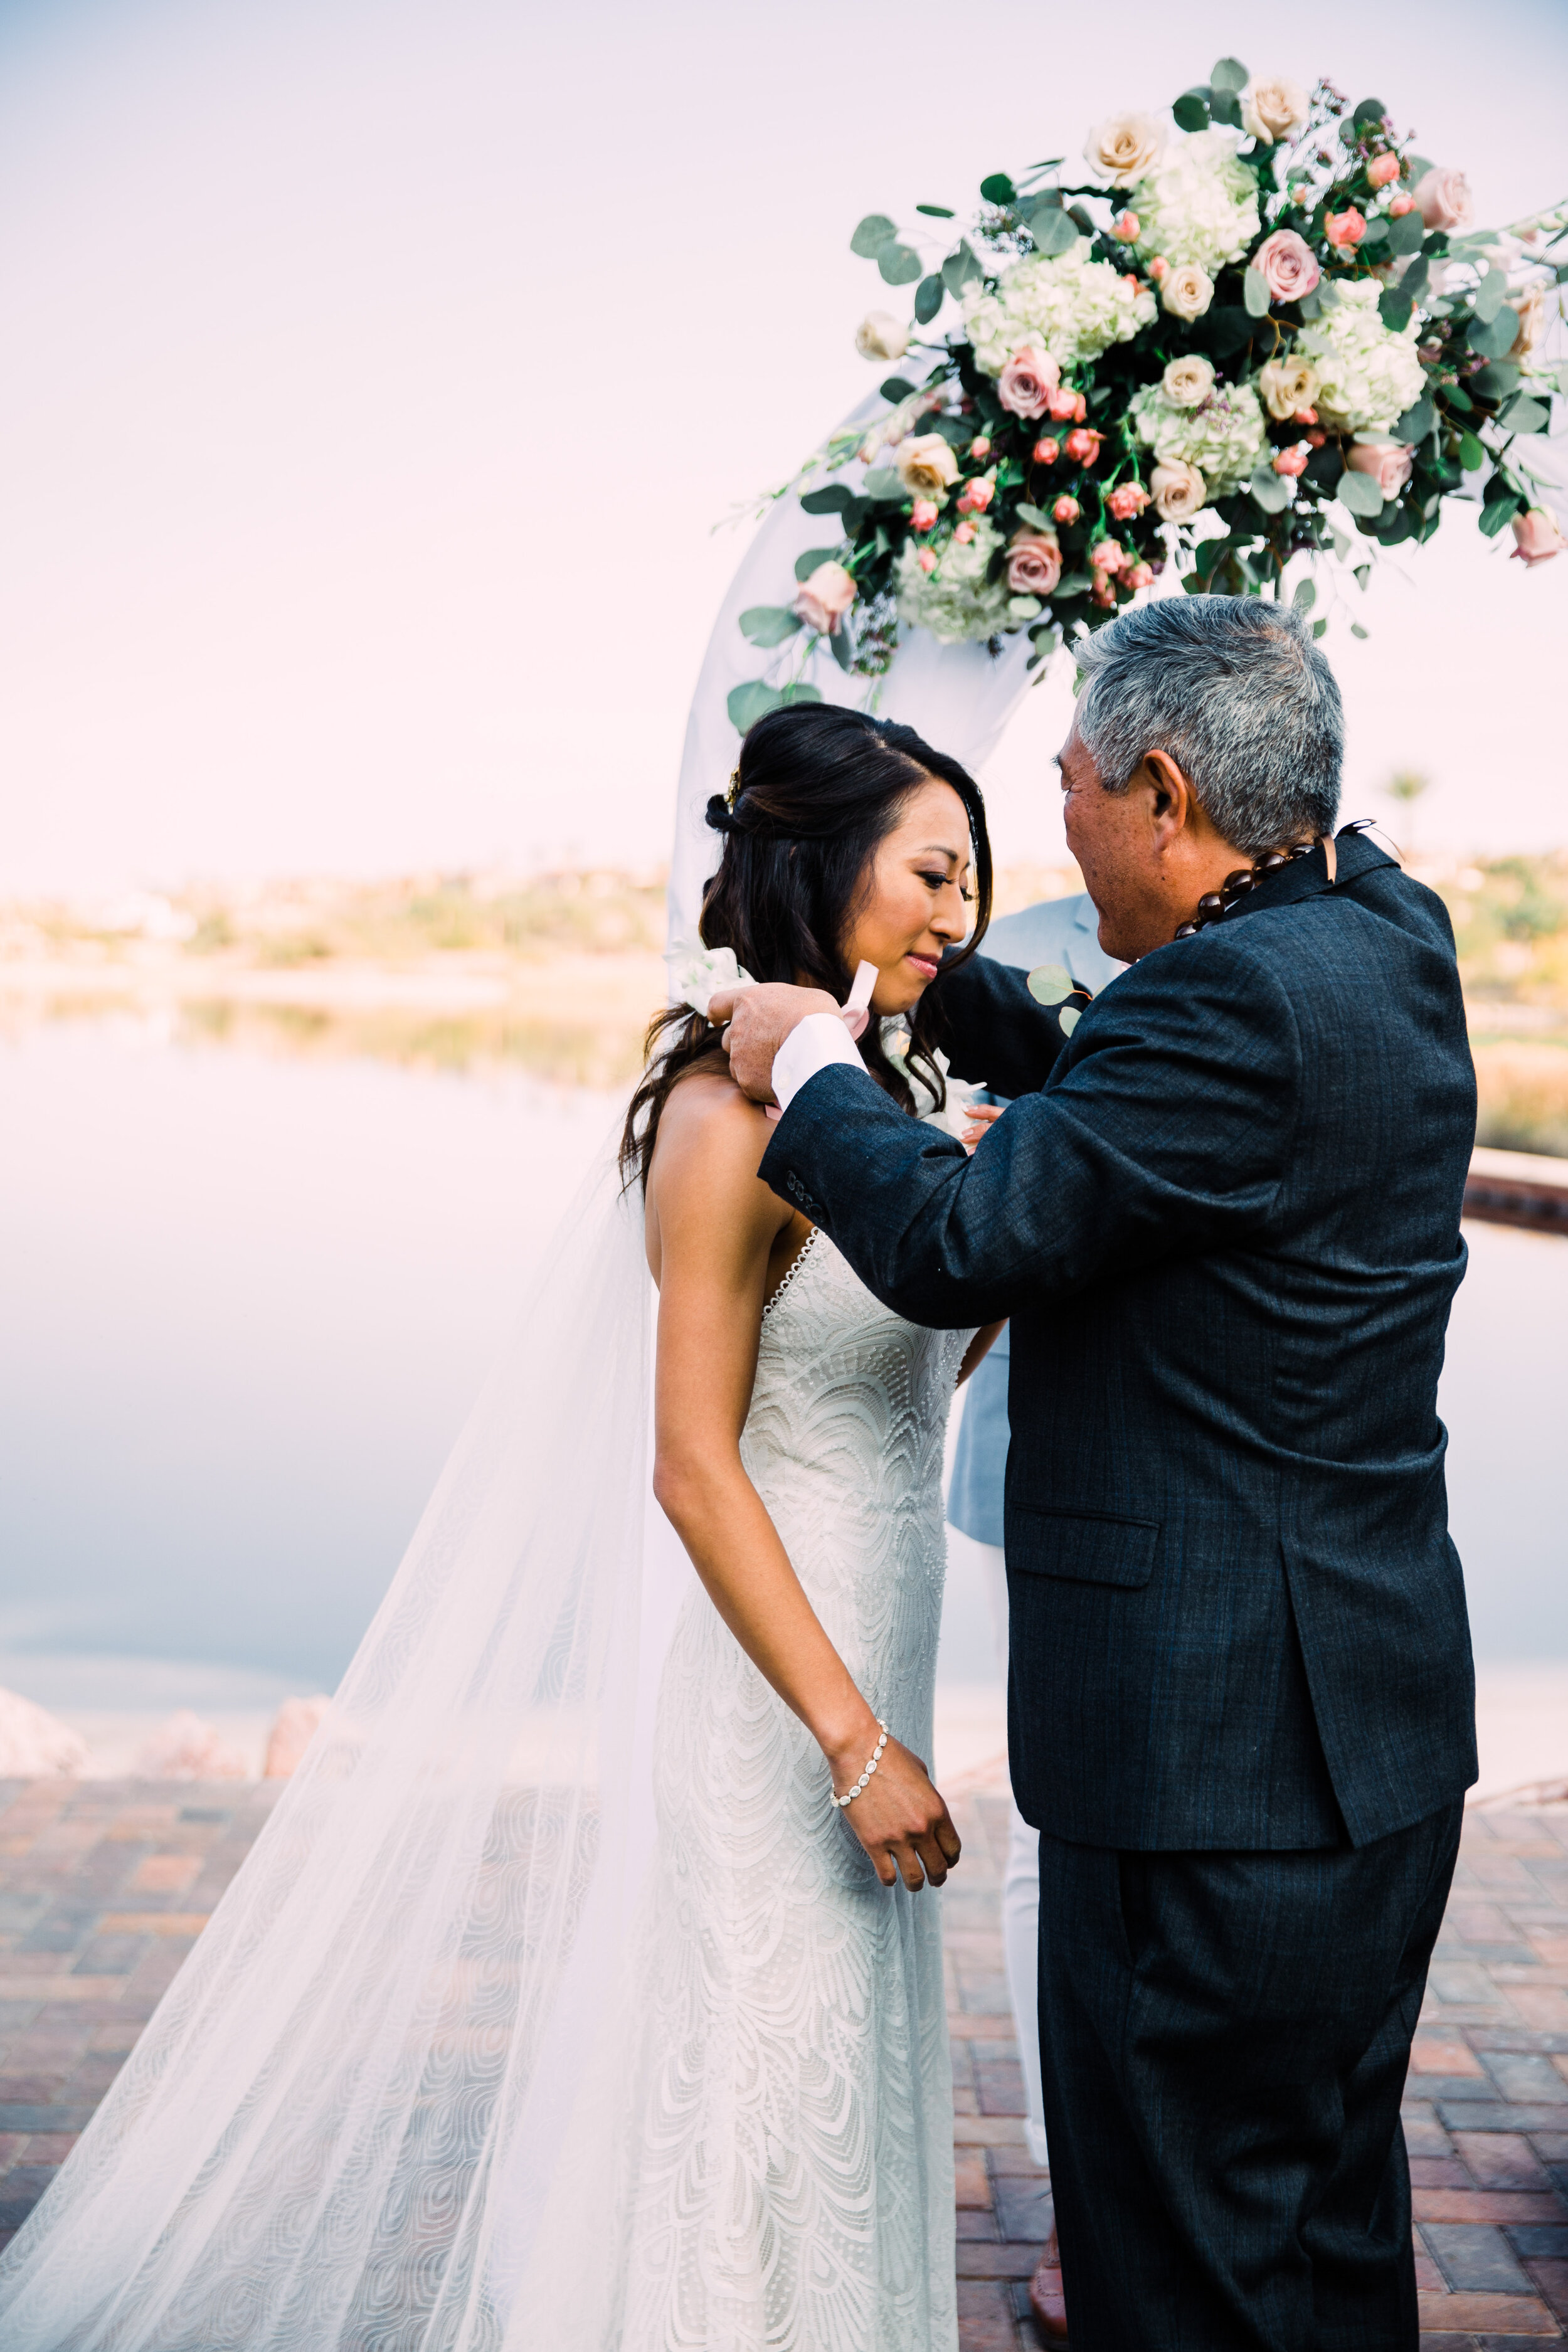 Hawaiian traditions at weddings